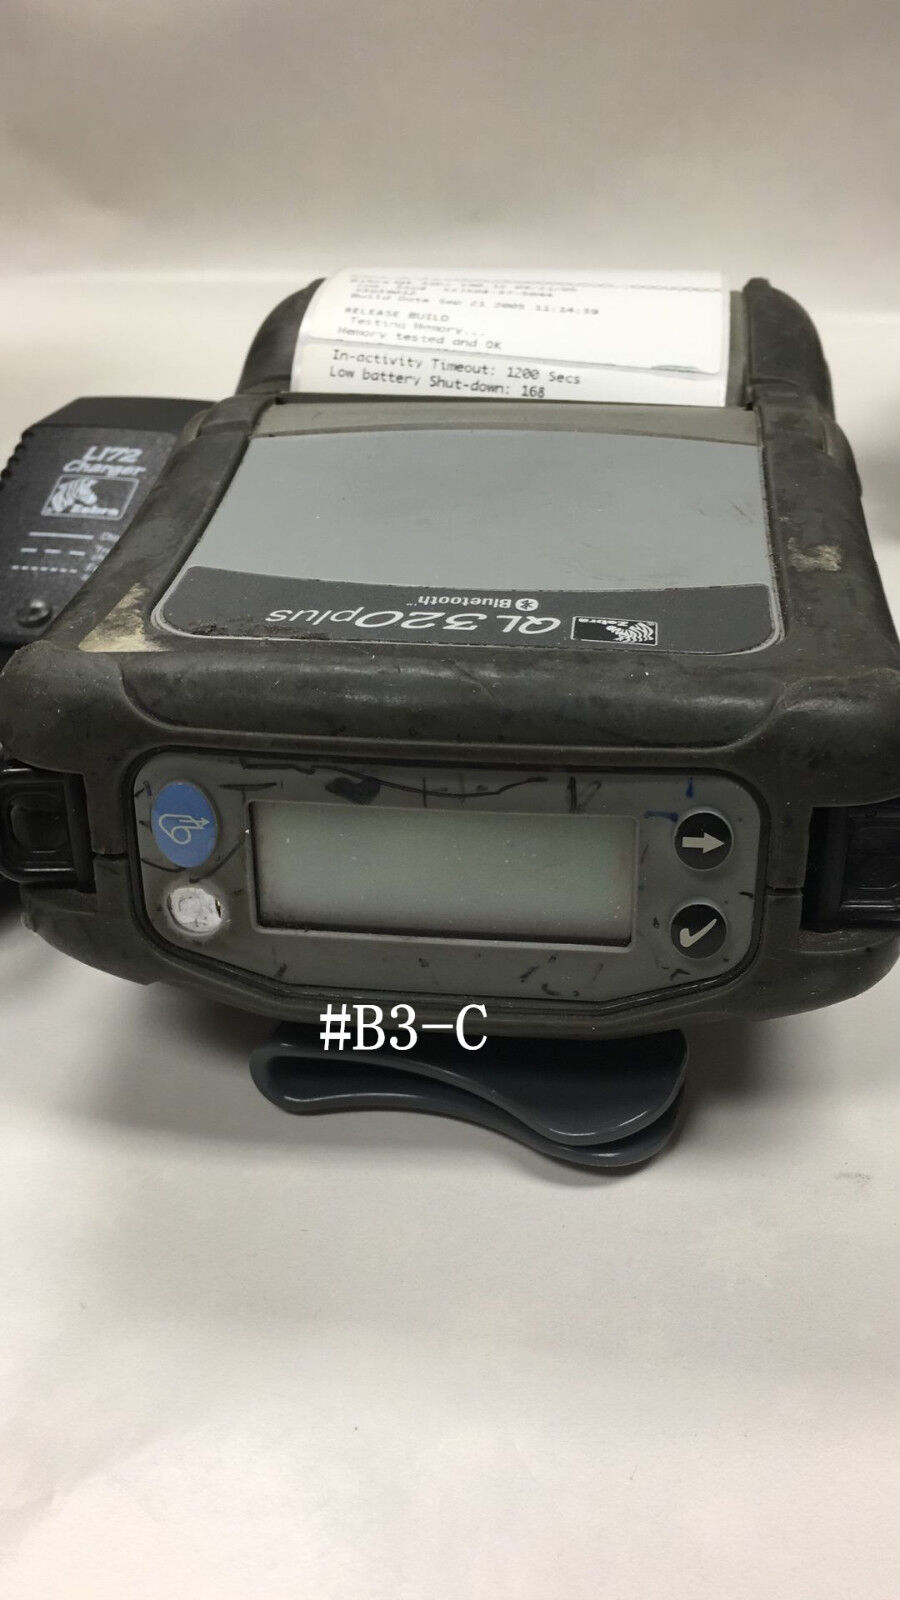 Zebra QL320 PLUS Bluetooth Mobile Printer Q3C-LUBA0000-00 , GradeB  #B3-C No PS